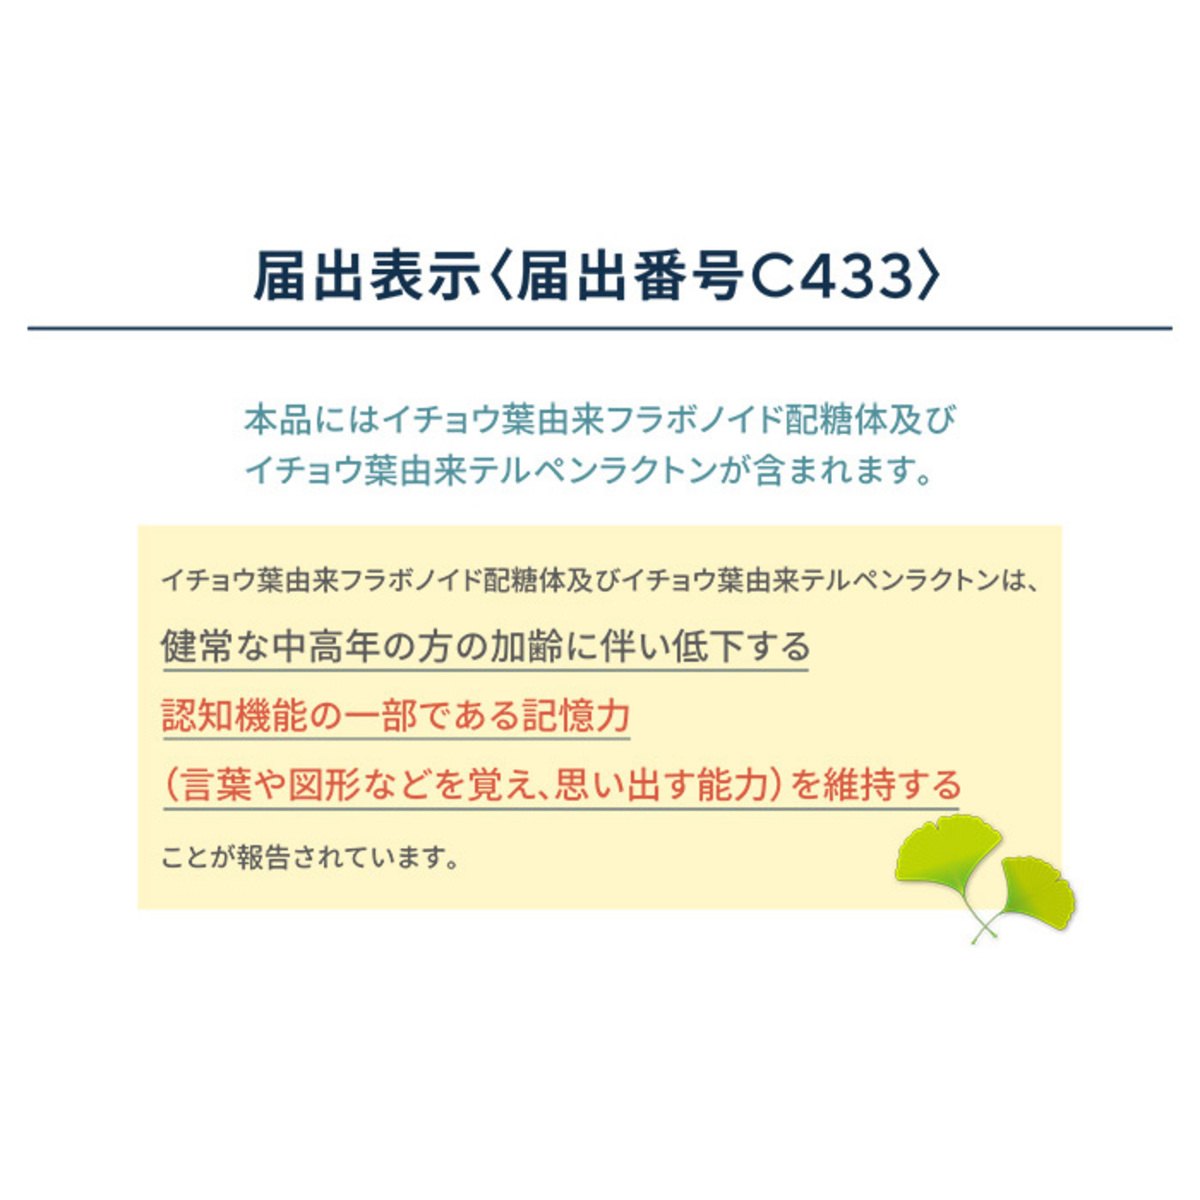 機能性表示食品記憶のとびらサプリ[30日分] - QVC.jp